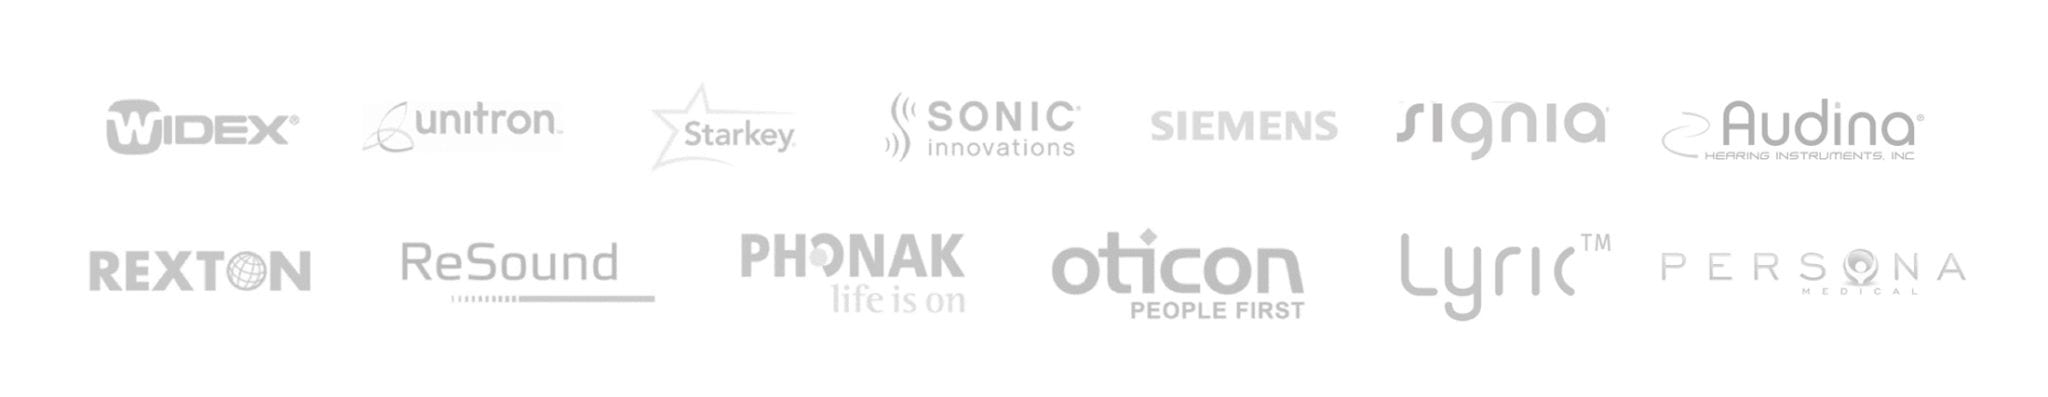 hearing aid provider logos